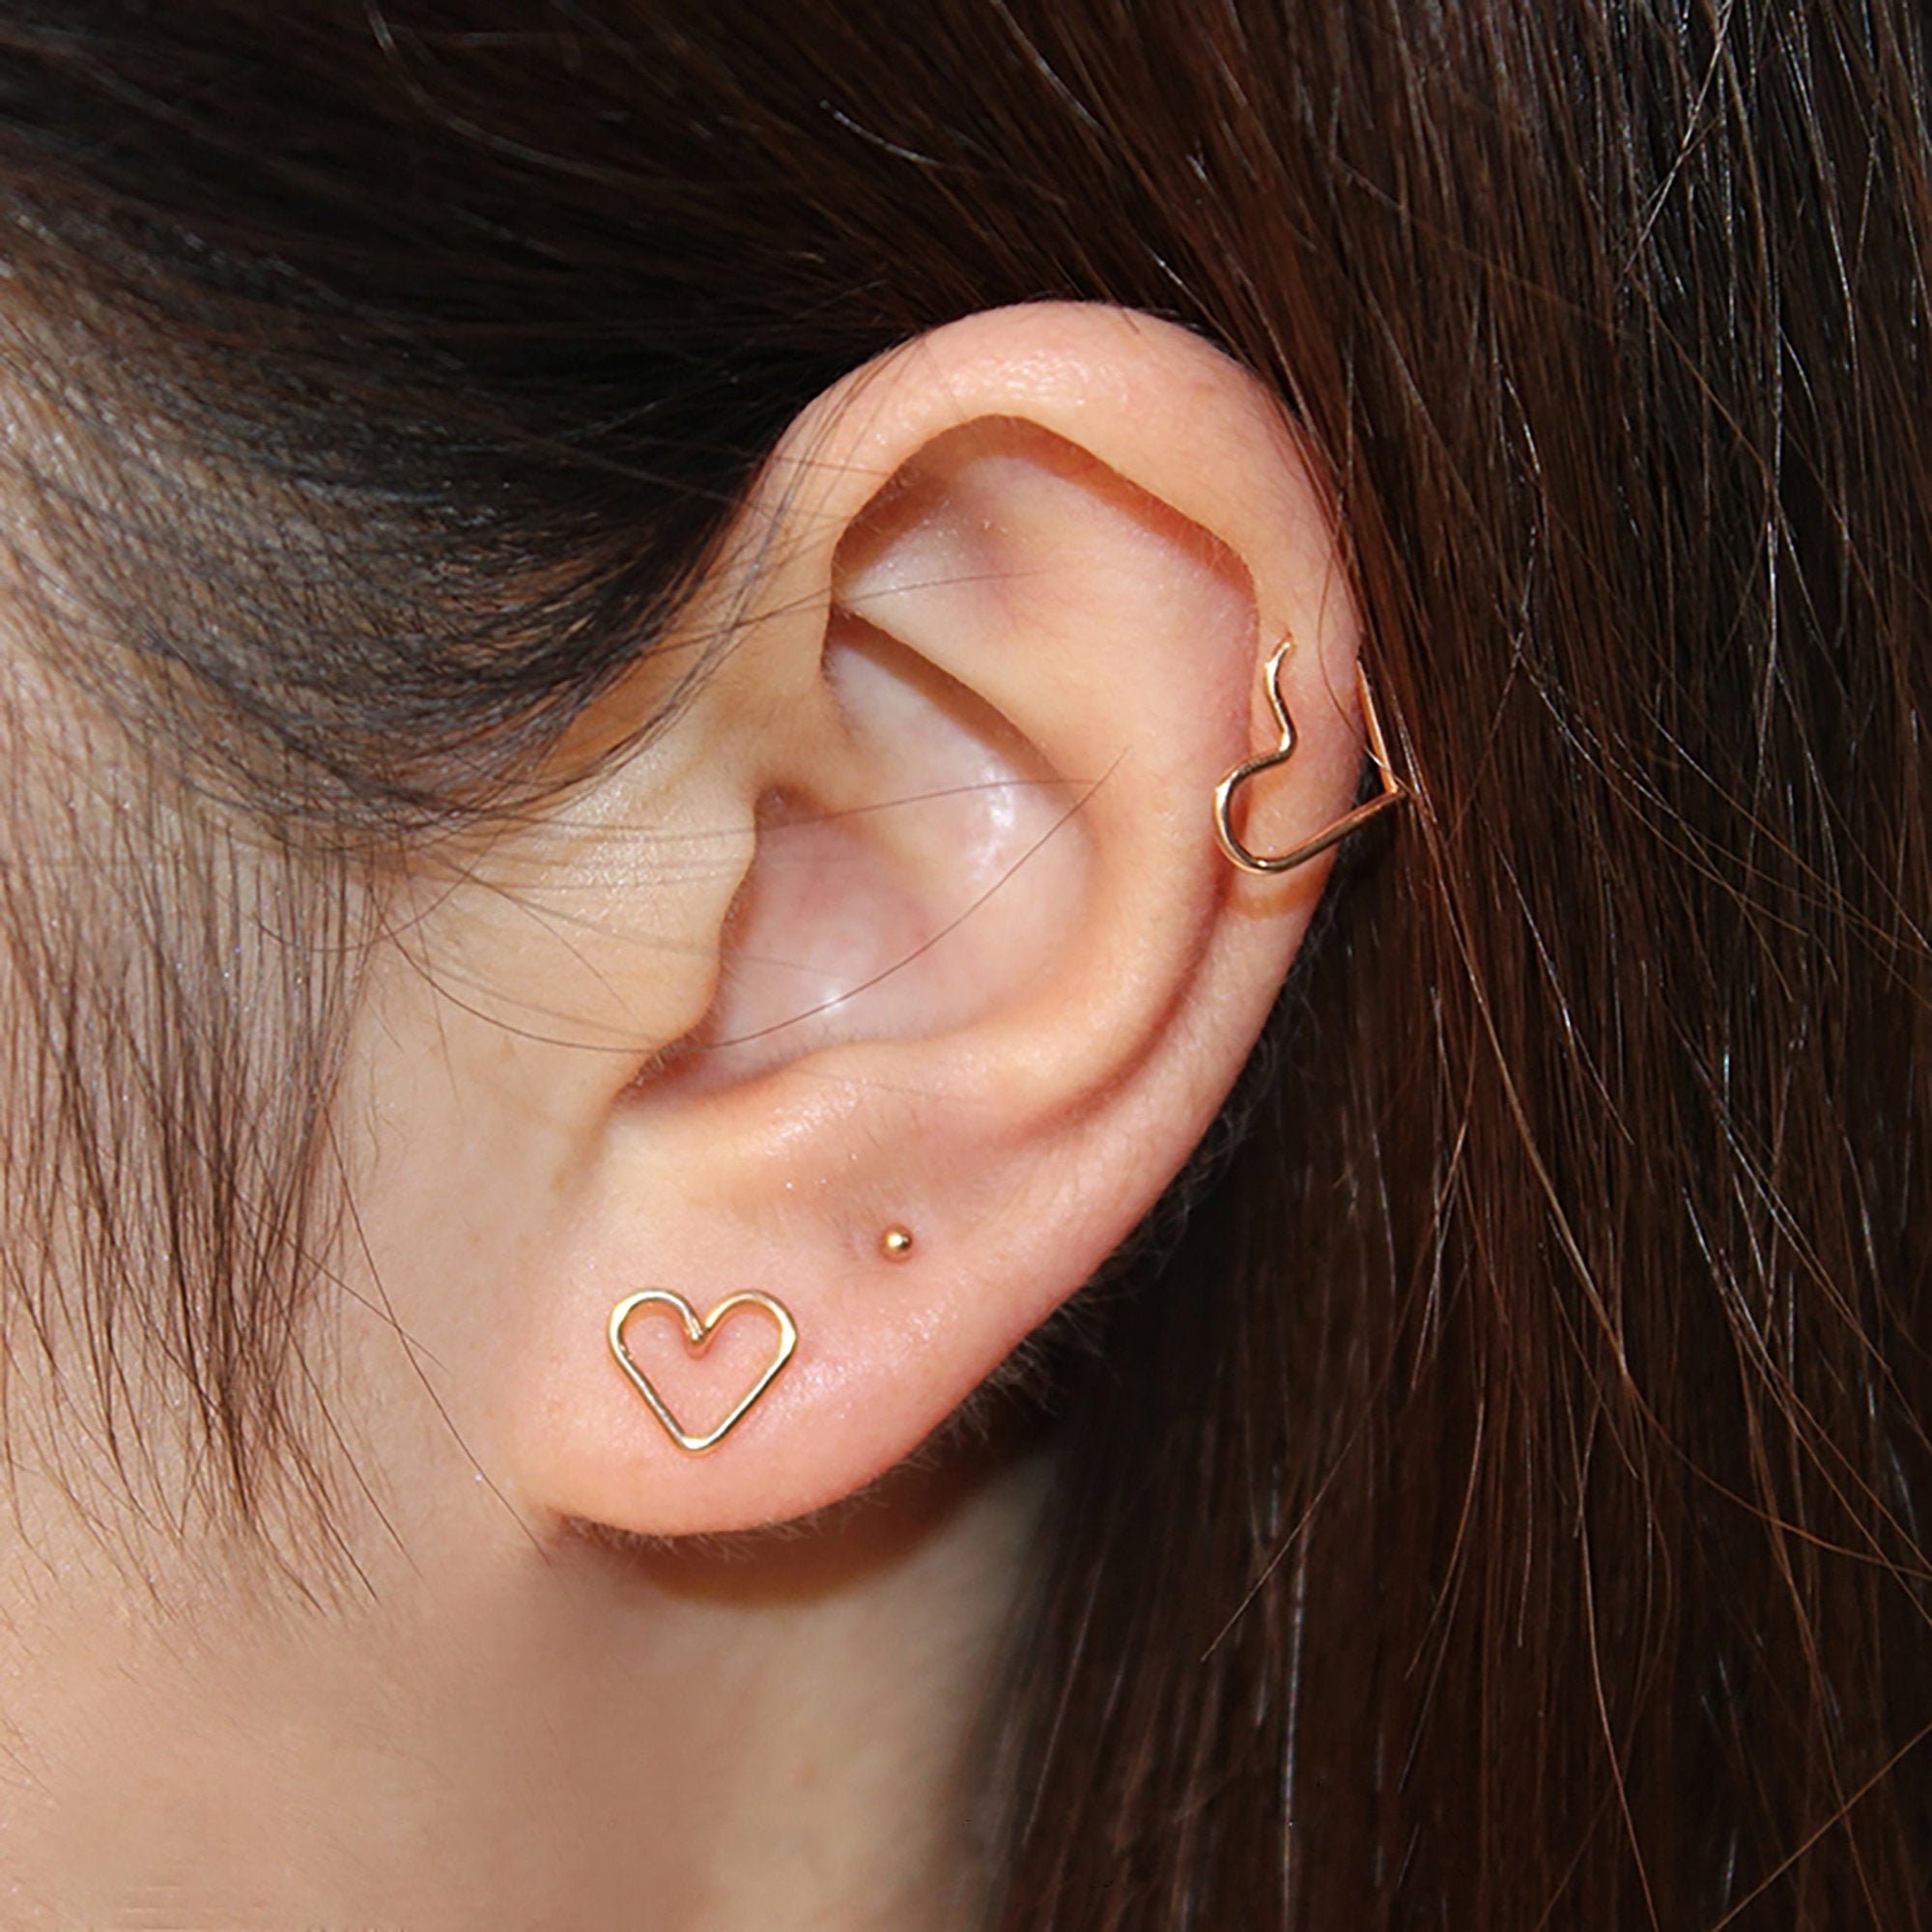 Women Hoop, Heart Earring, 14k Earring, Helix Helix Filled Hoop, Hoop Denmark Gold Earring, for - Gift Cartilage Silver Piercing Hoop, Heart Etsy